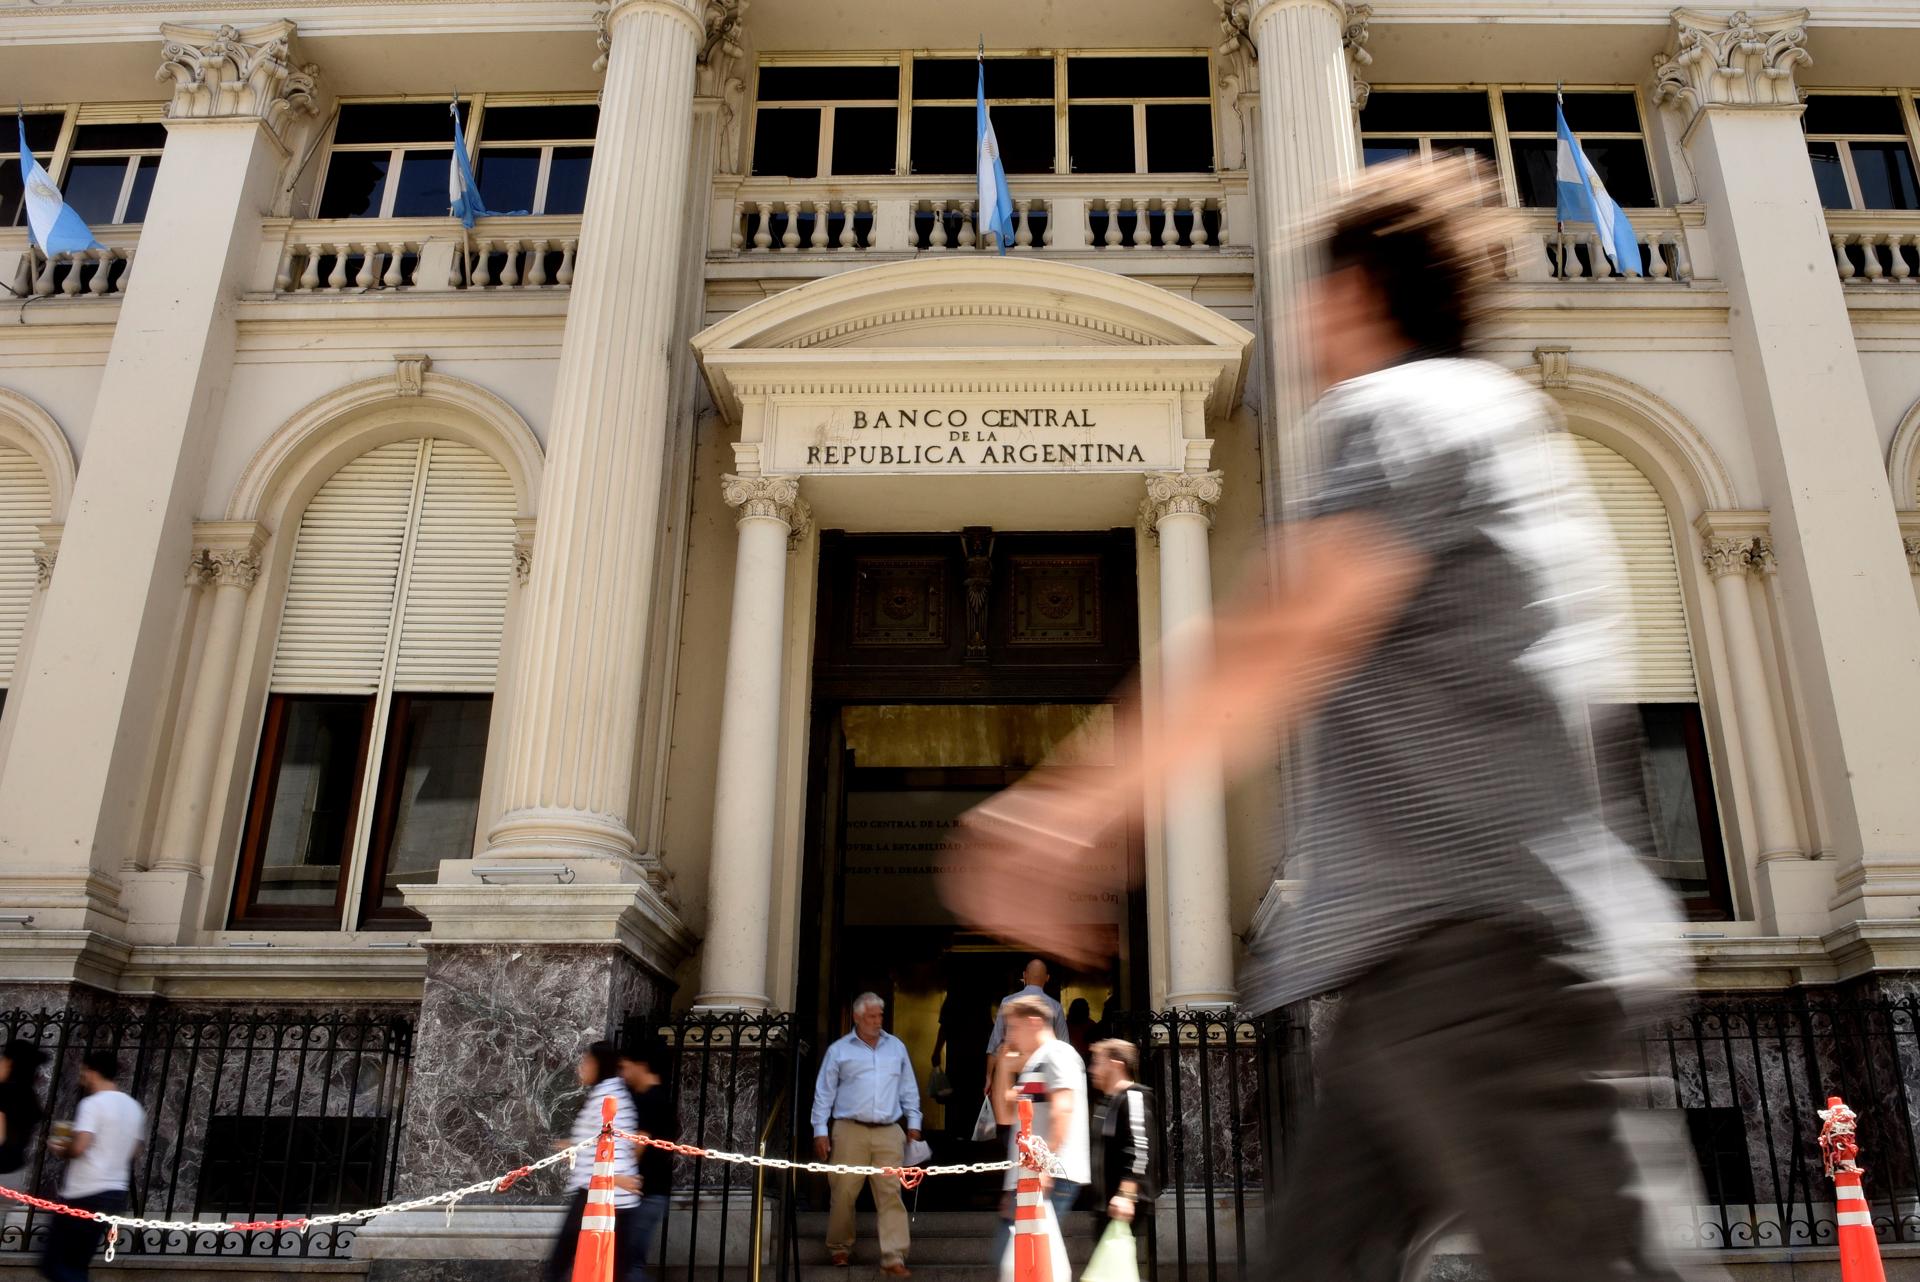 Vista general del frente de Banco Central de Argentina, en una fotografía de archivo. EFE/ Fabián Mattiazzi